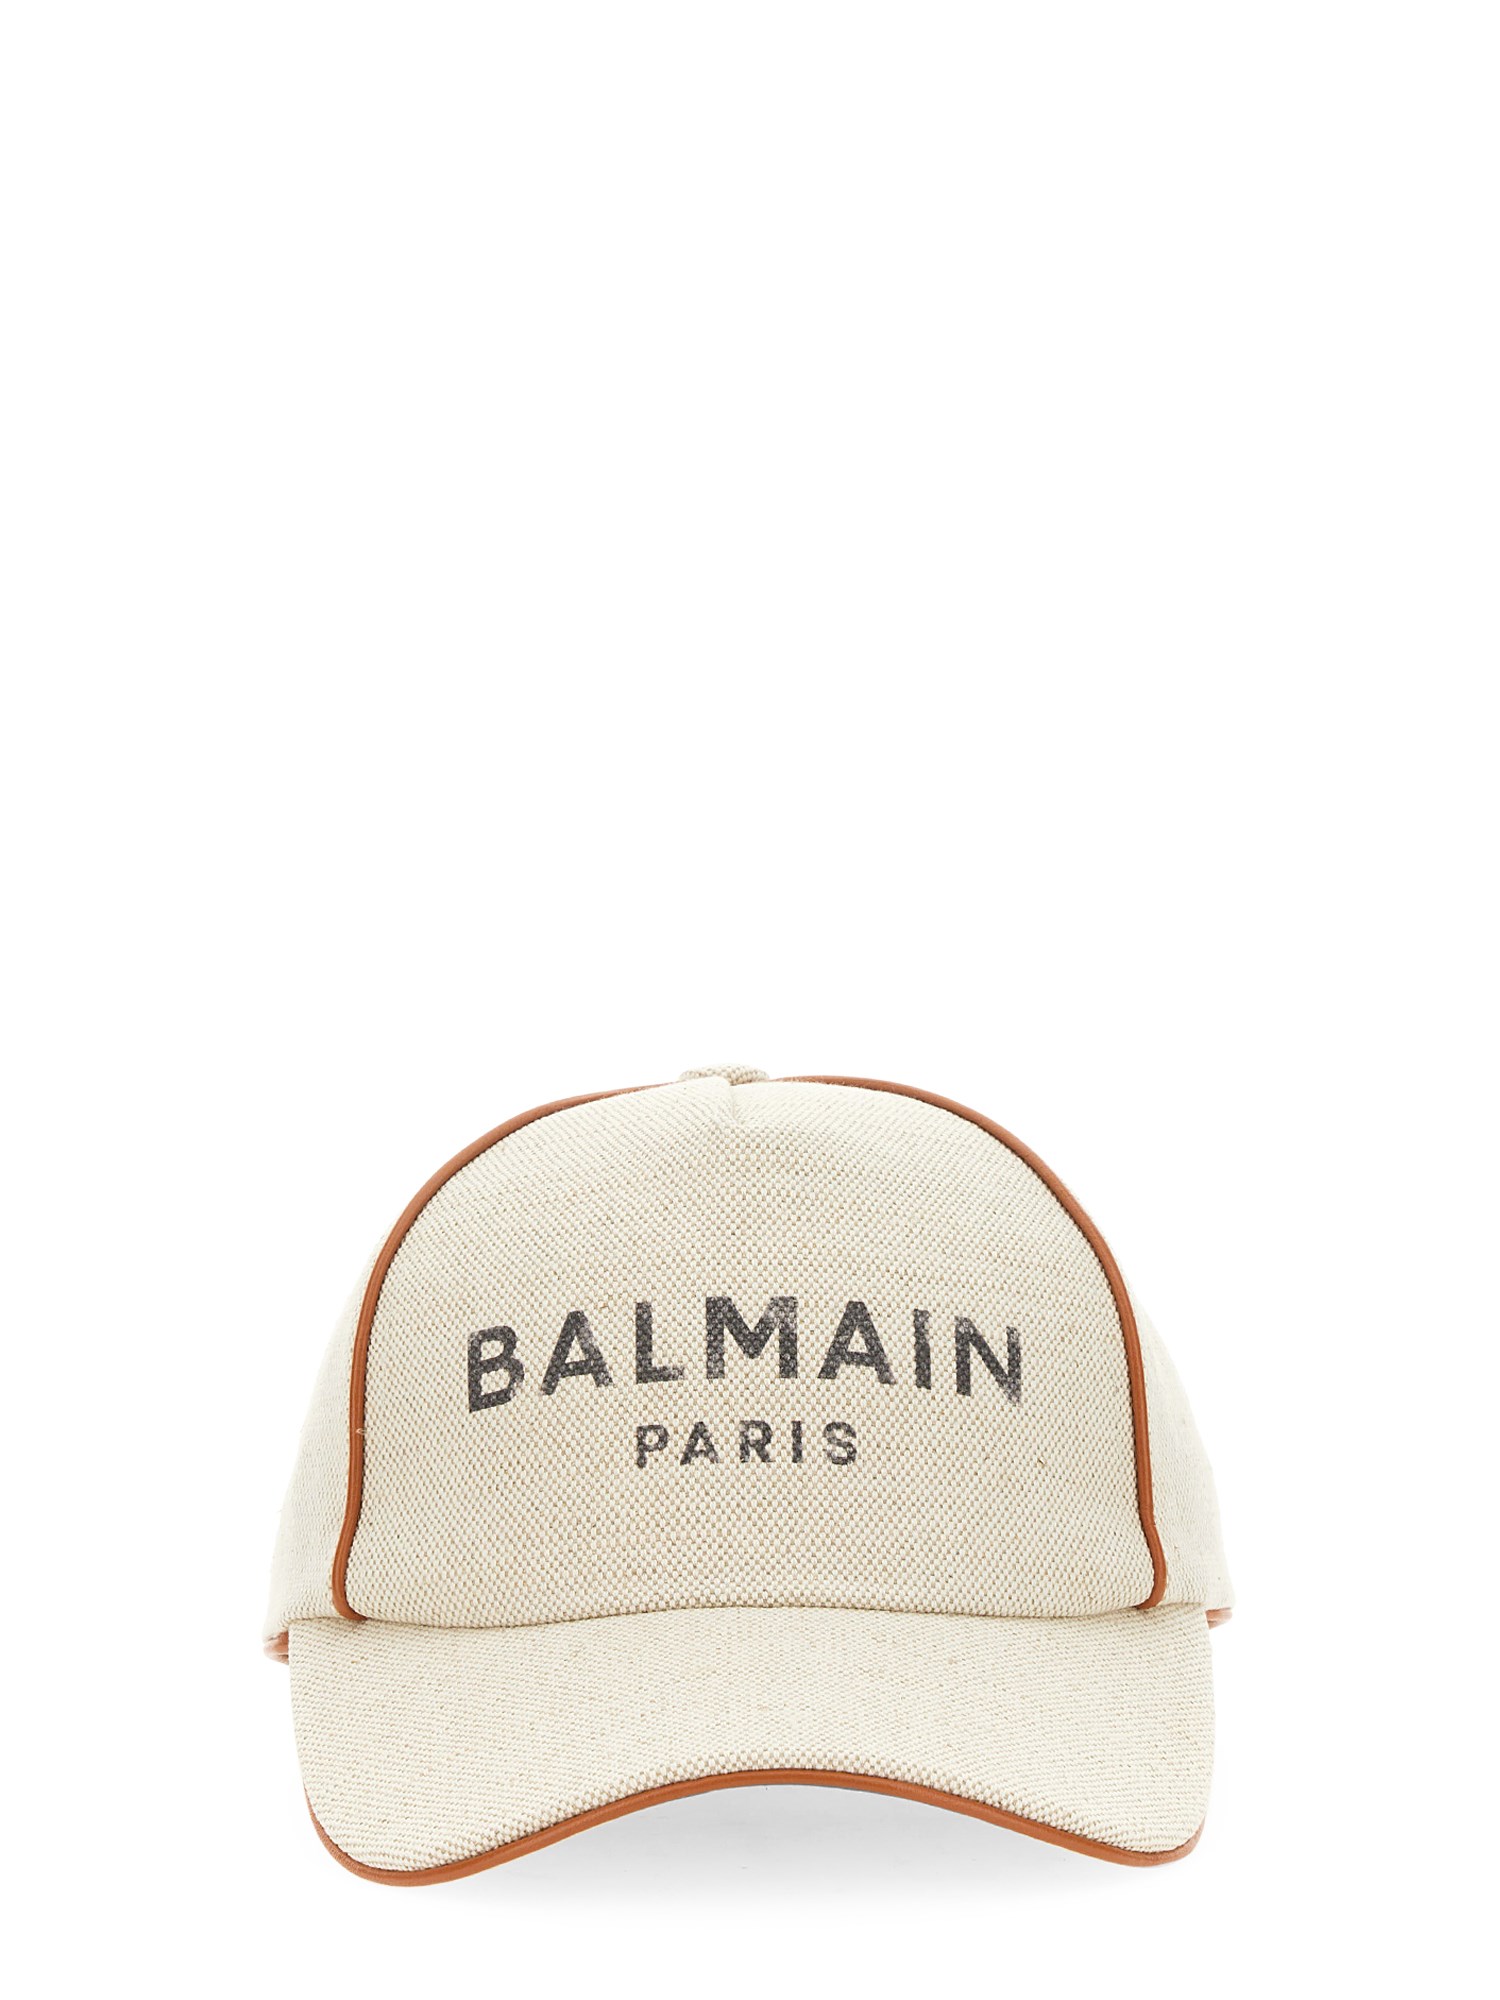 balmain baseball hat with logo